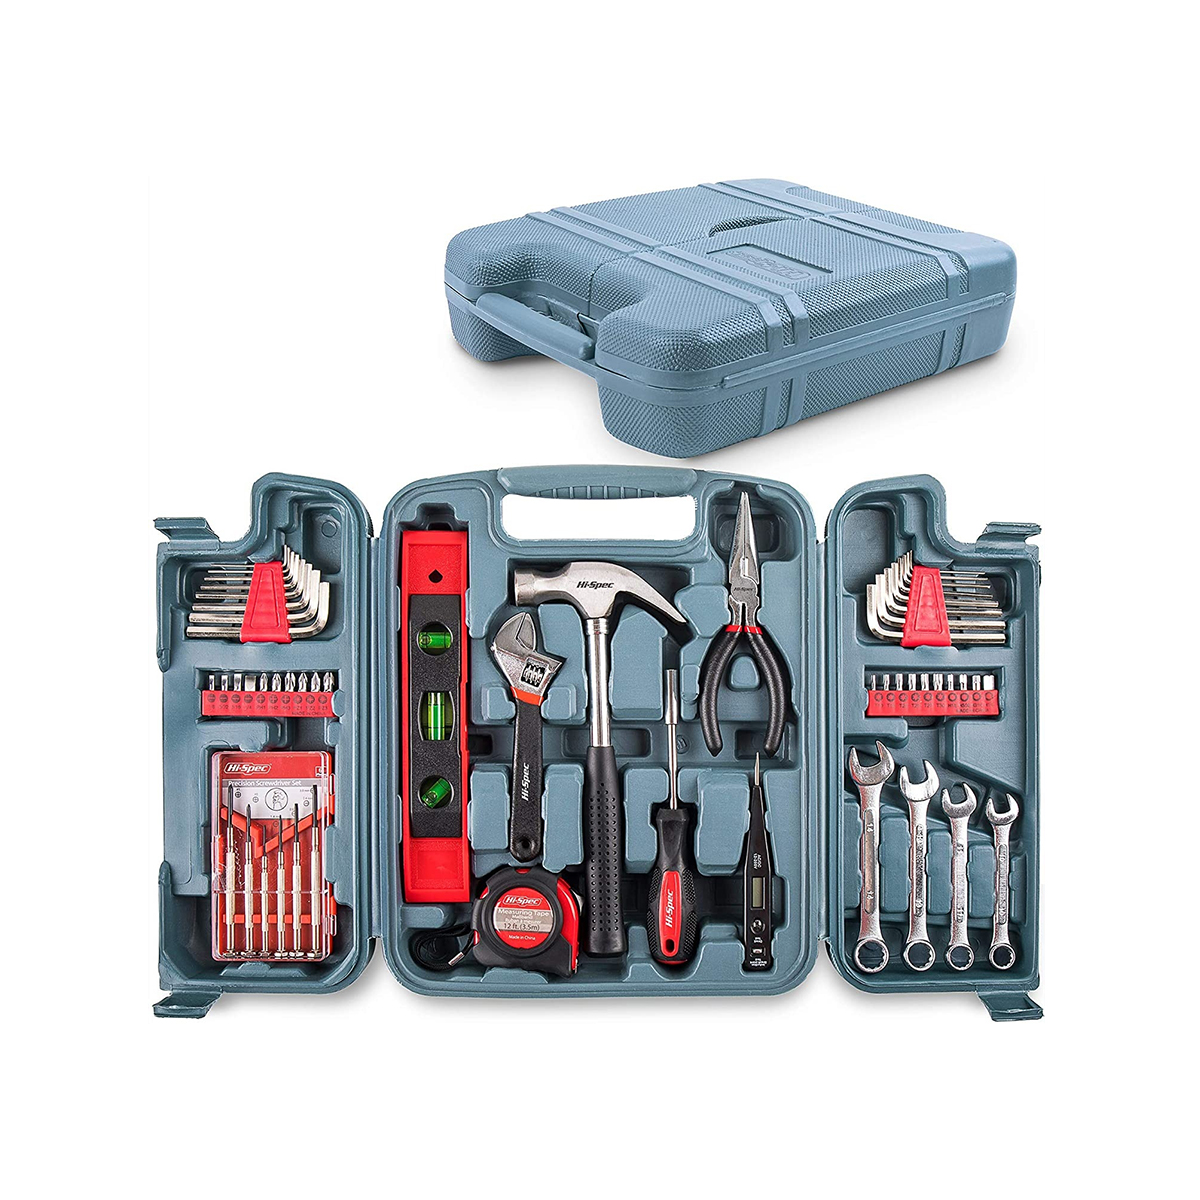 53 عدد Muti Purpose Combo Kit Hand Tools Homehold Home Repairing Diy Kits Complet Tool Tools